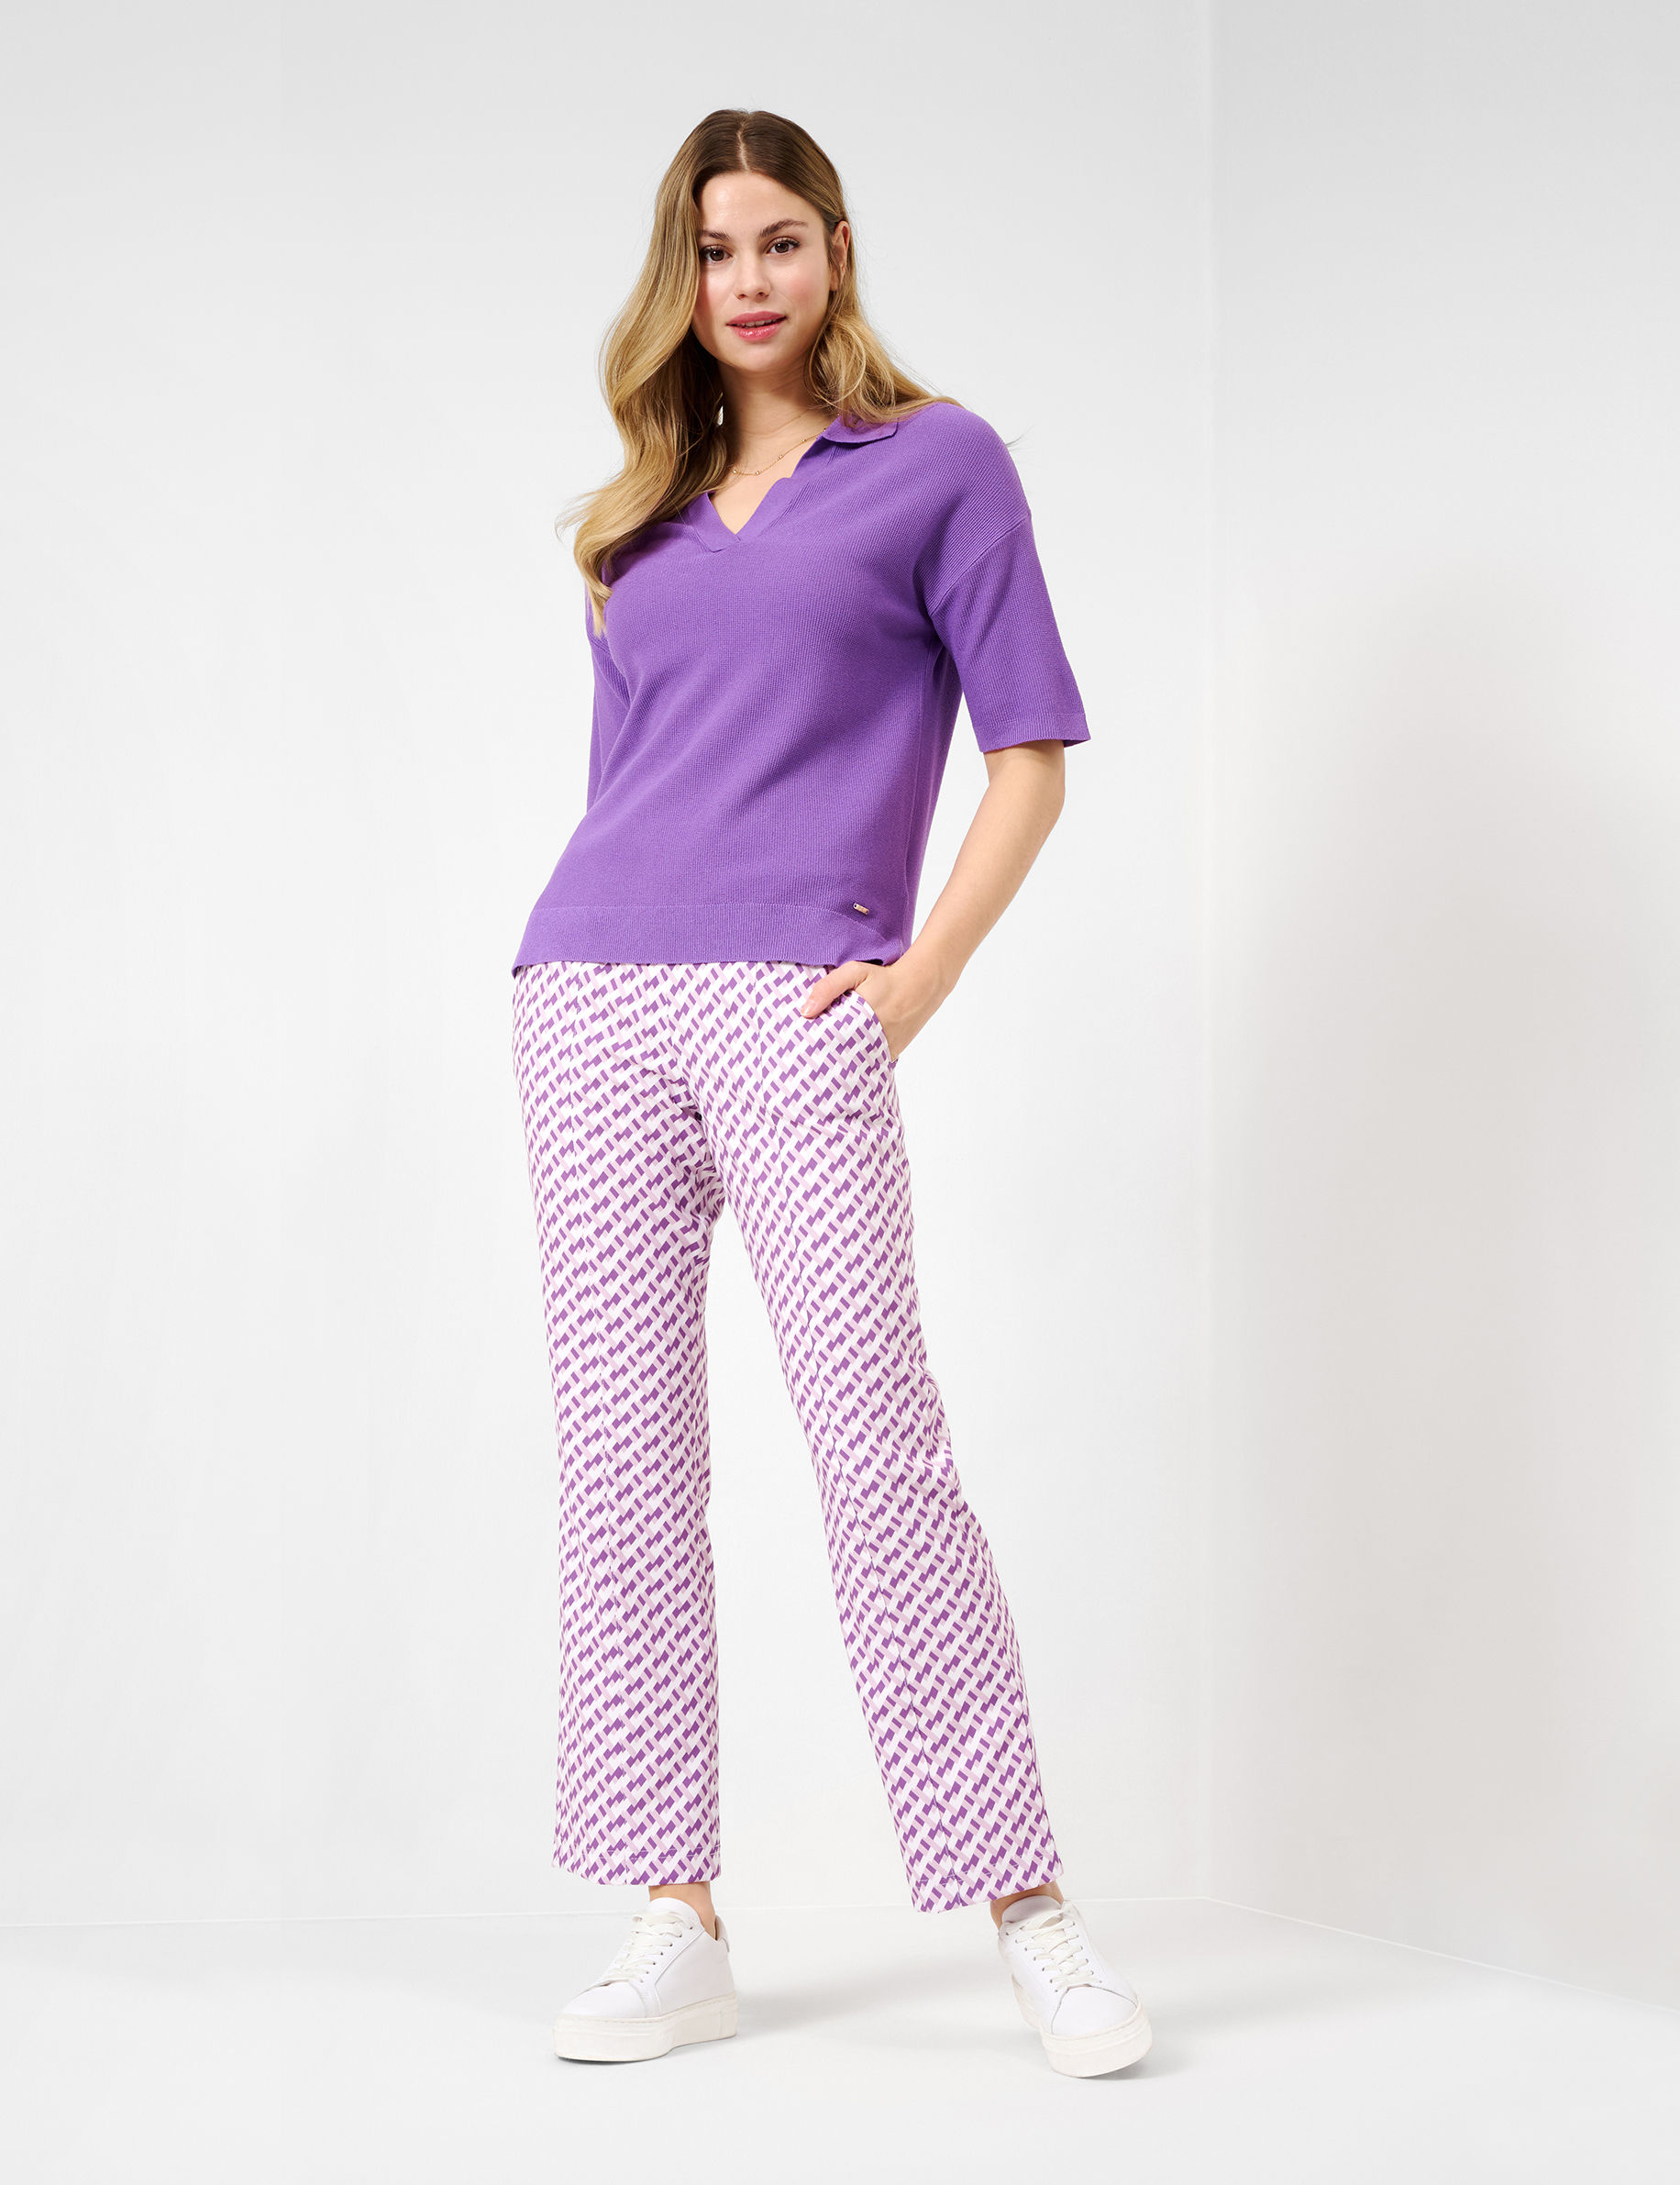 Women Style LILIAN purple  Model Outfit